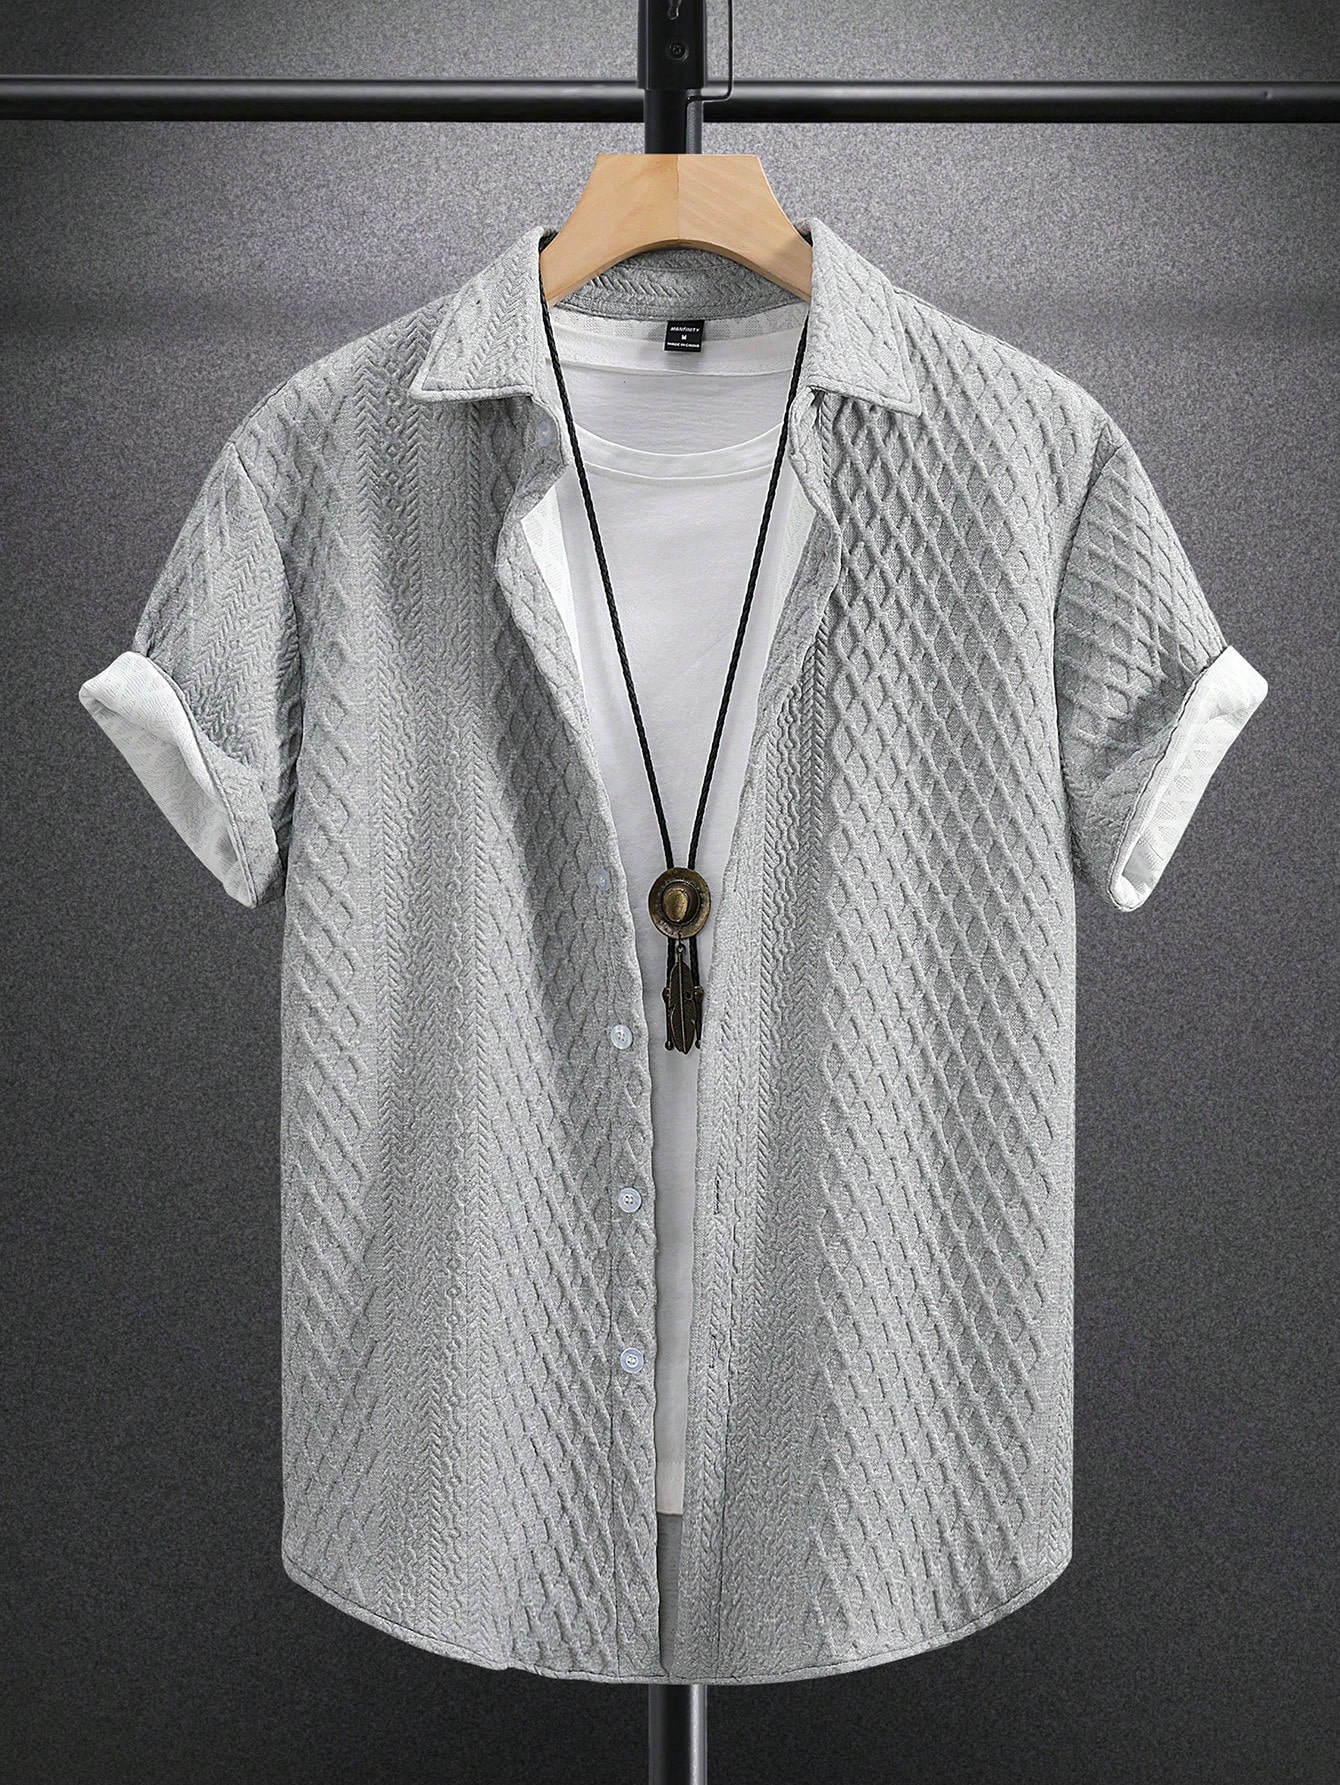 Мужская рубашка с коротким рукавом с тиснением сердца Manfinity Hypemode, серый текстурированная однотонная мужская футболка поло cb drytec genre cutter